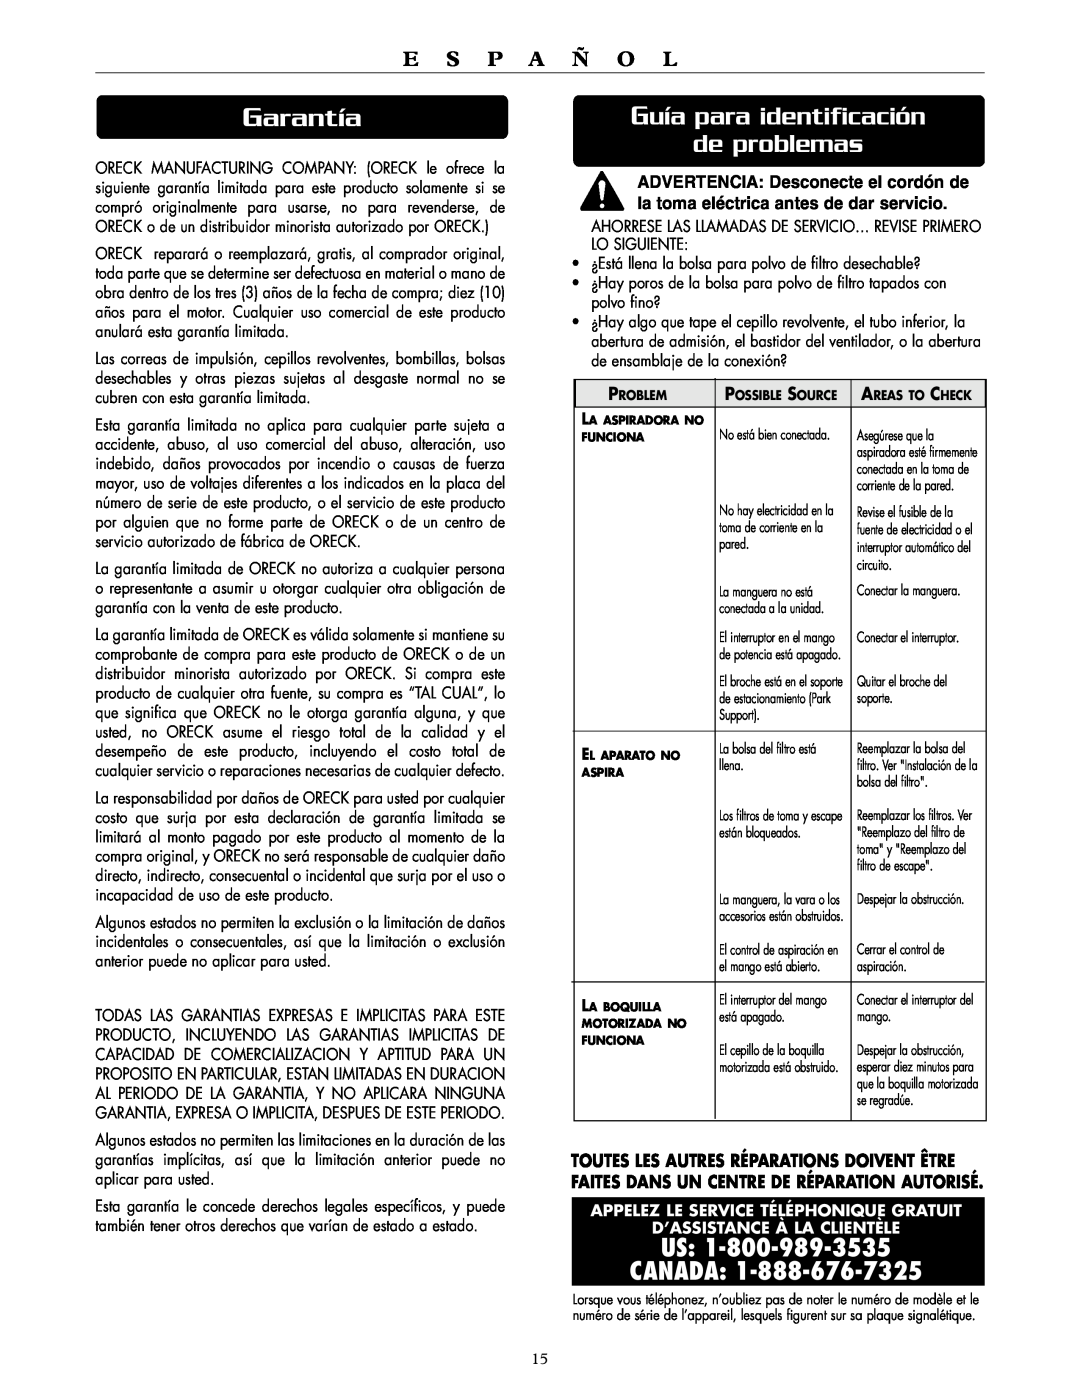 Oreck DTX 1300 Garantía, Guía para identificación de problemas, Us Canada, E S P A Ñ O L, D’Assistance À La Clientèle 